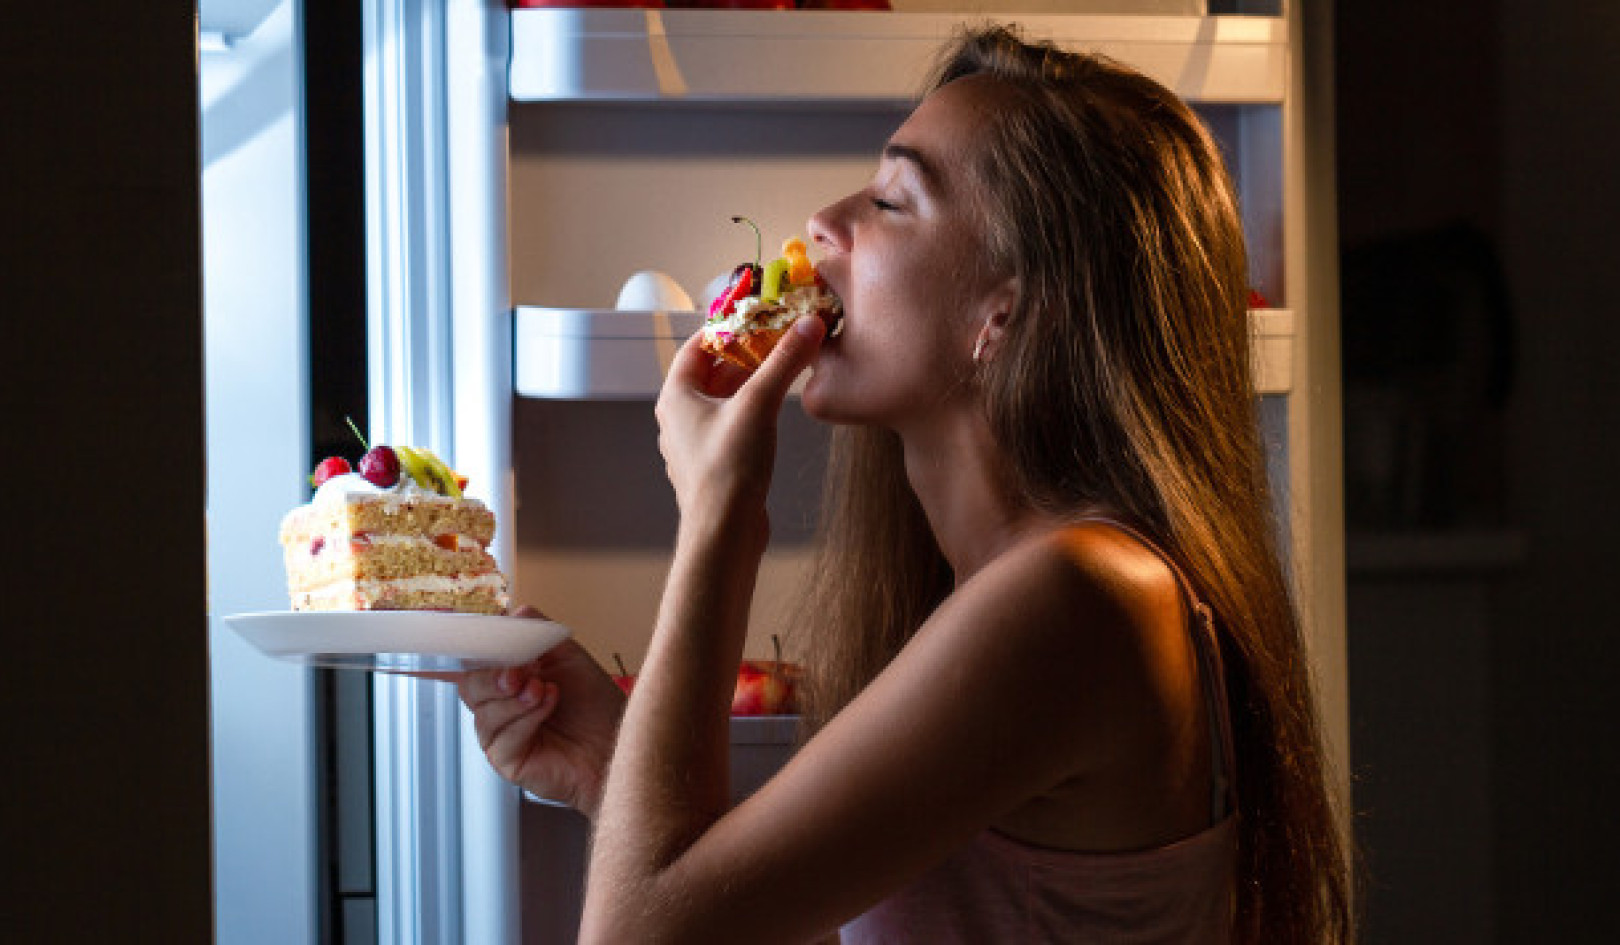 Η γλυκόπικρη πραγματικότητα: Επανεξετάζοντας τις διατροφικές μας συνήθειες